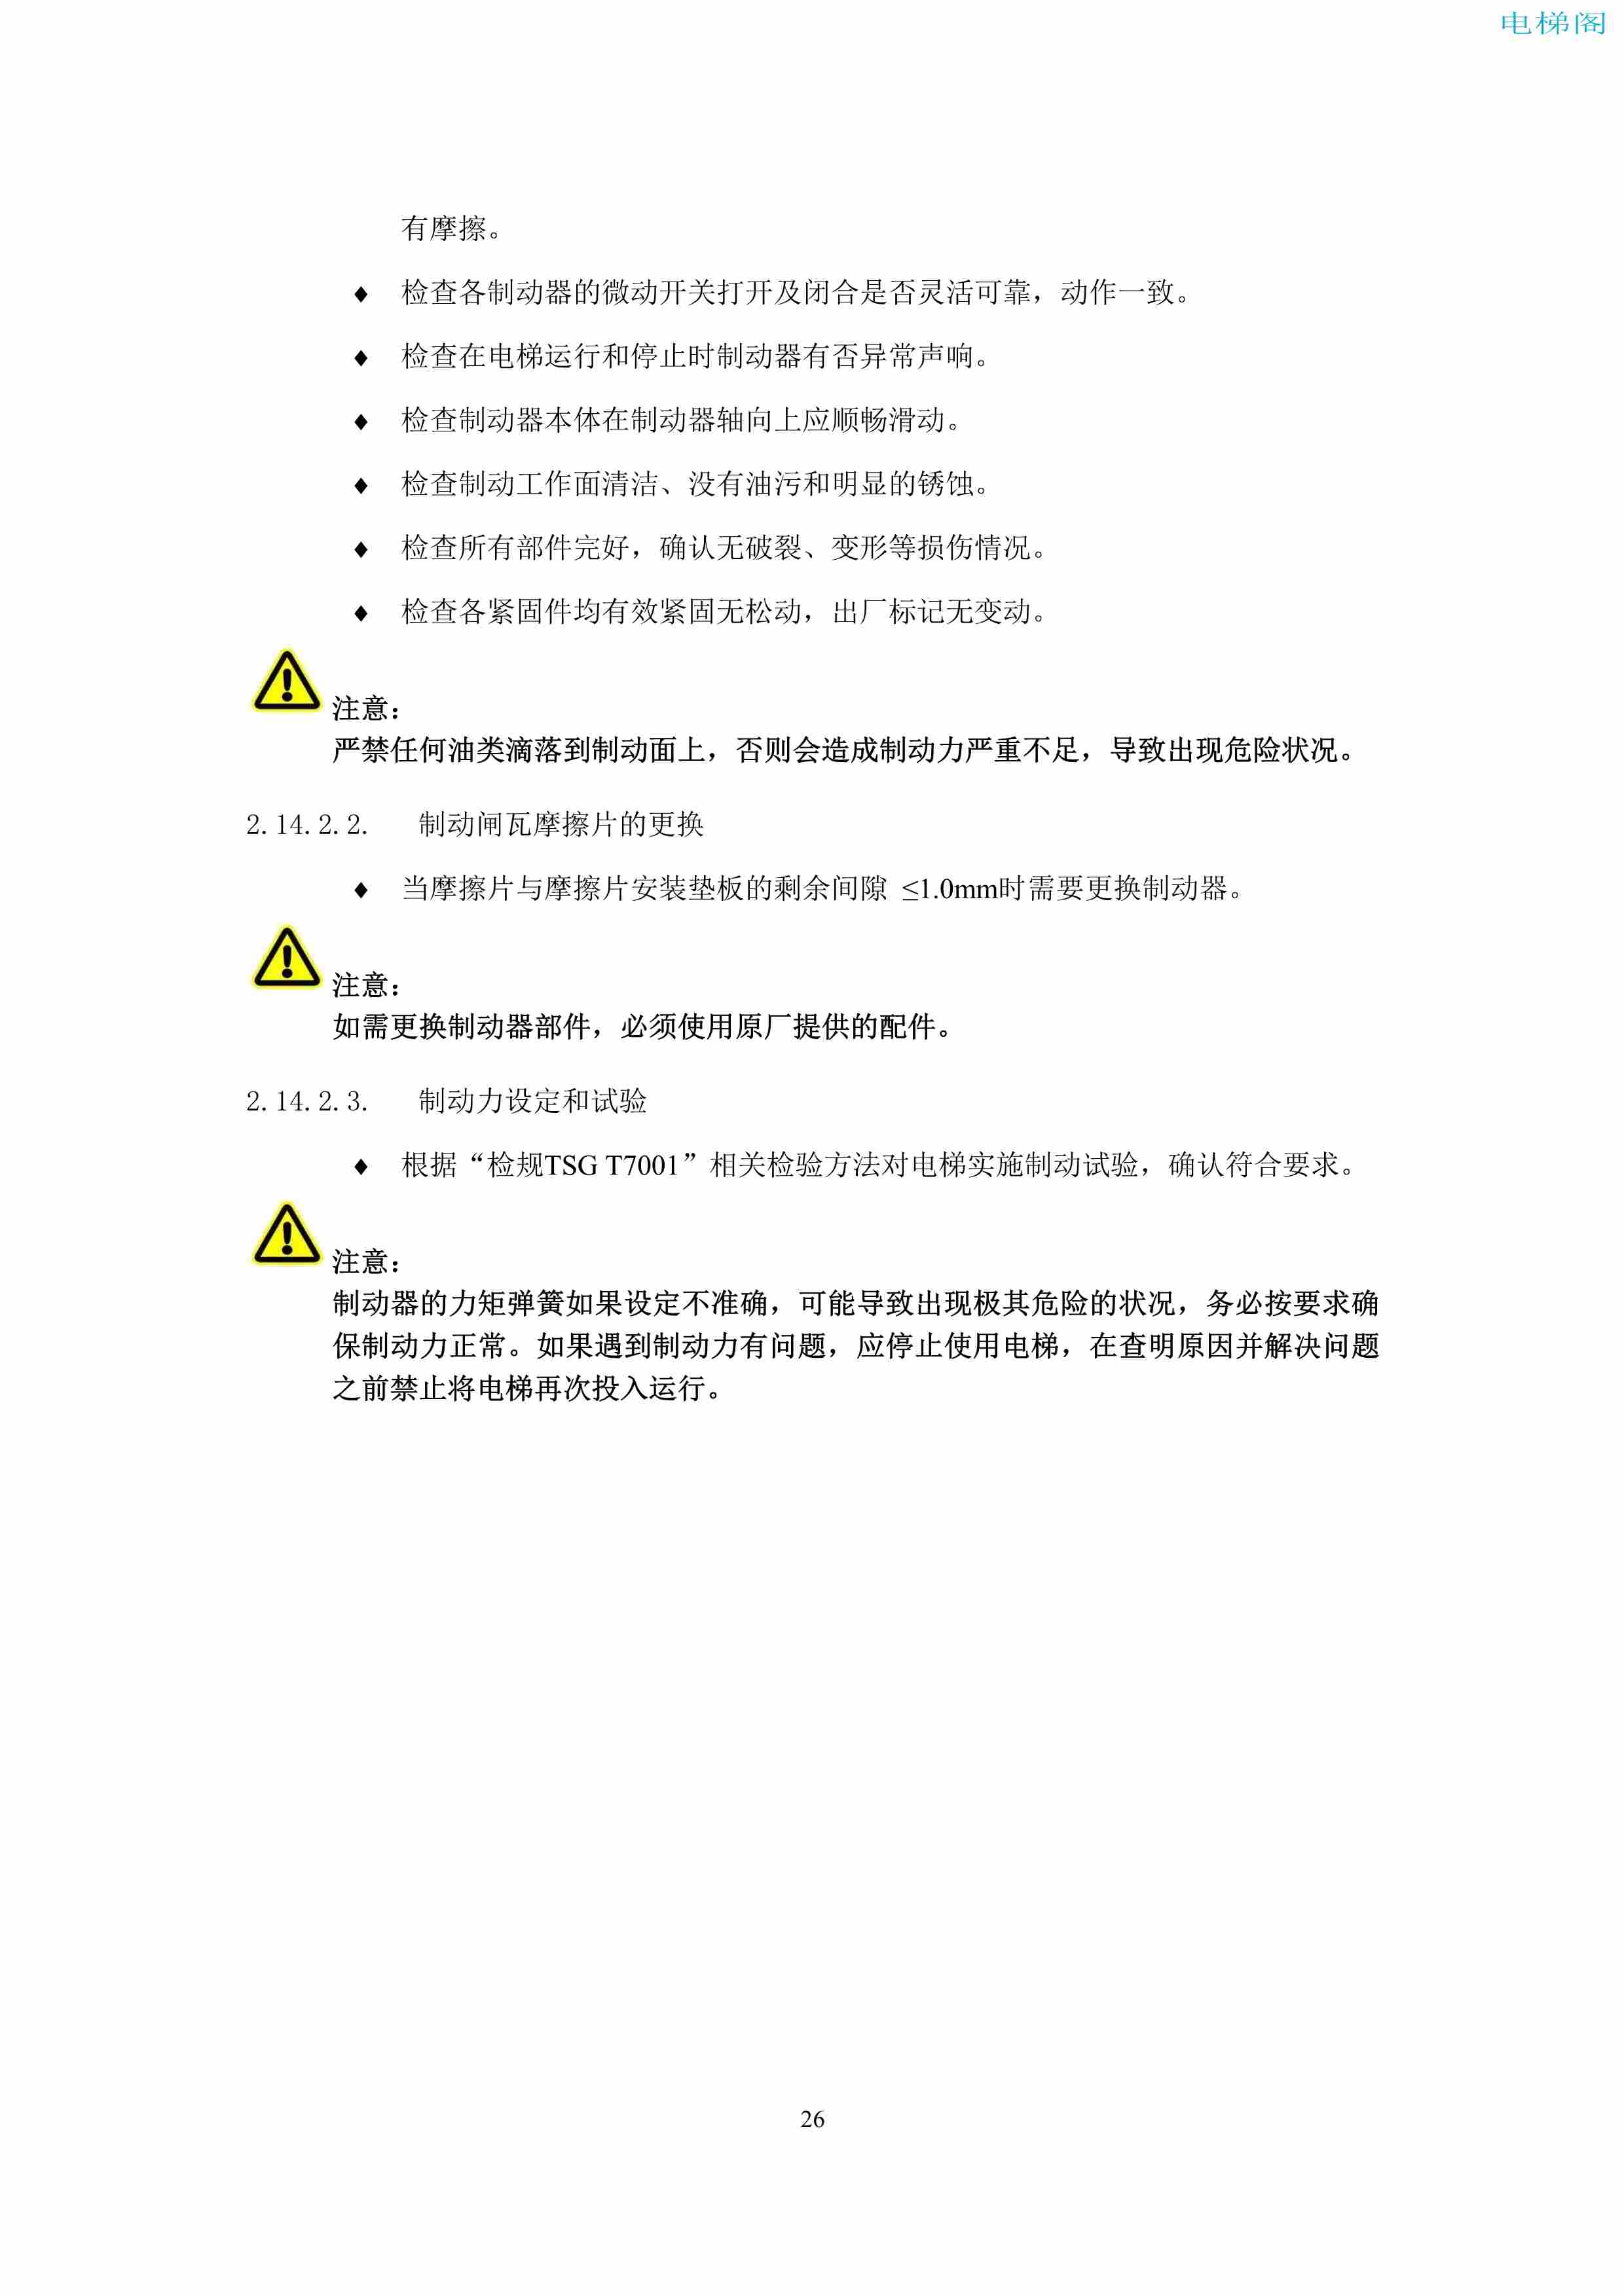 上海三菱电梯有限公司电梯制动器维护作业要领汇编_28.jpg